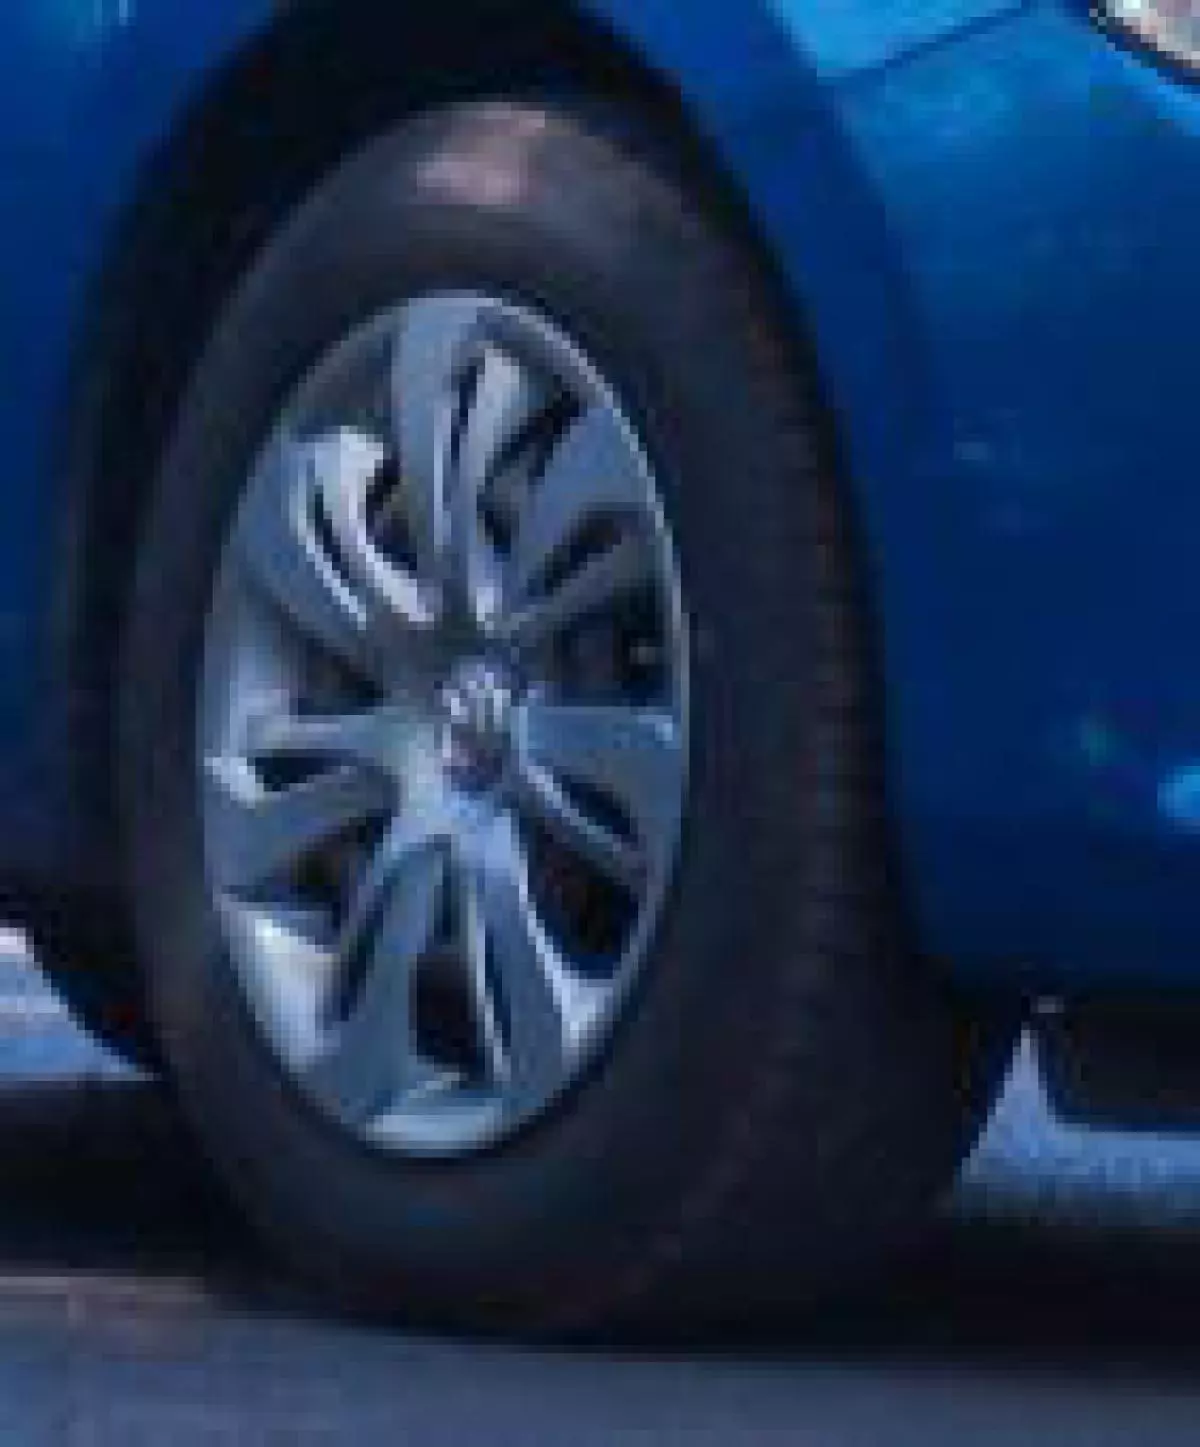 Mazda Demio - 2015